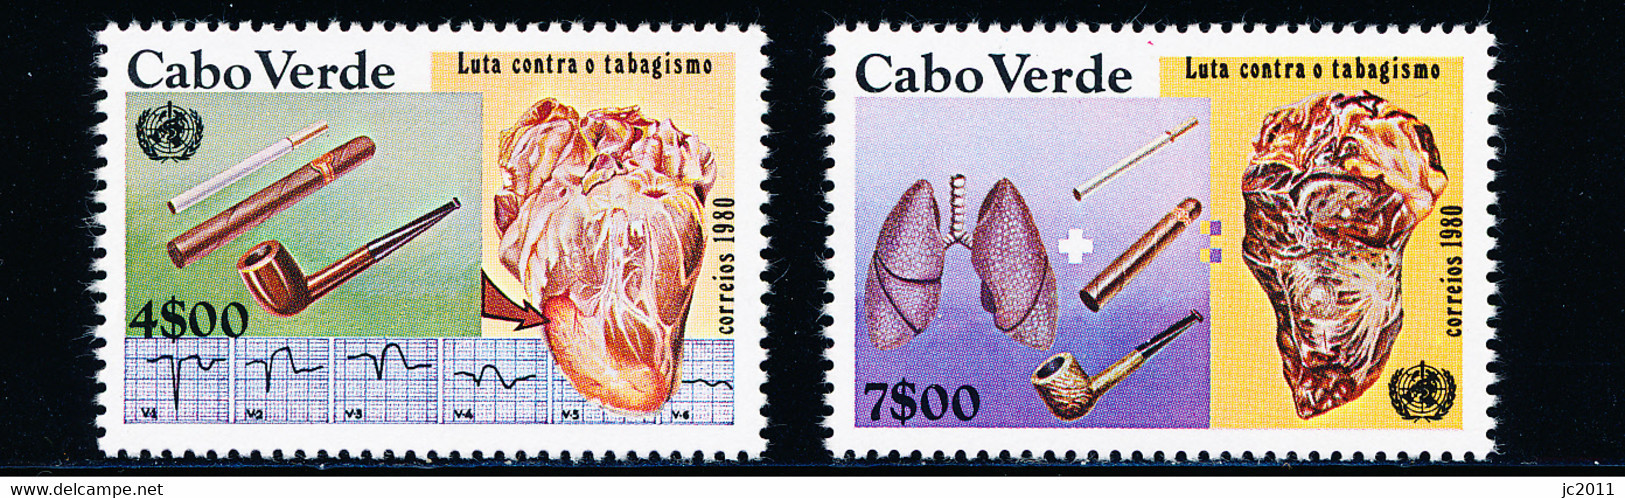 Cabo Verde - 1980 - Smoking / Fight Against - World Health Day - MNH - Kaapverdische Eilanden